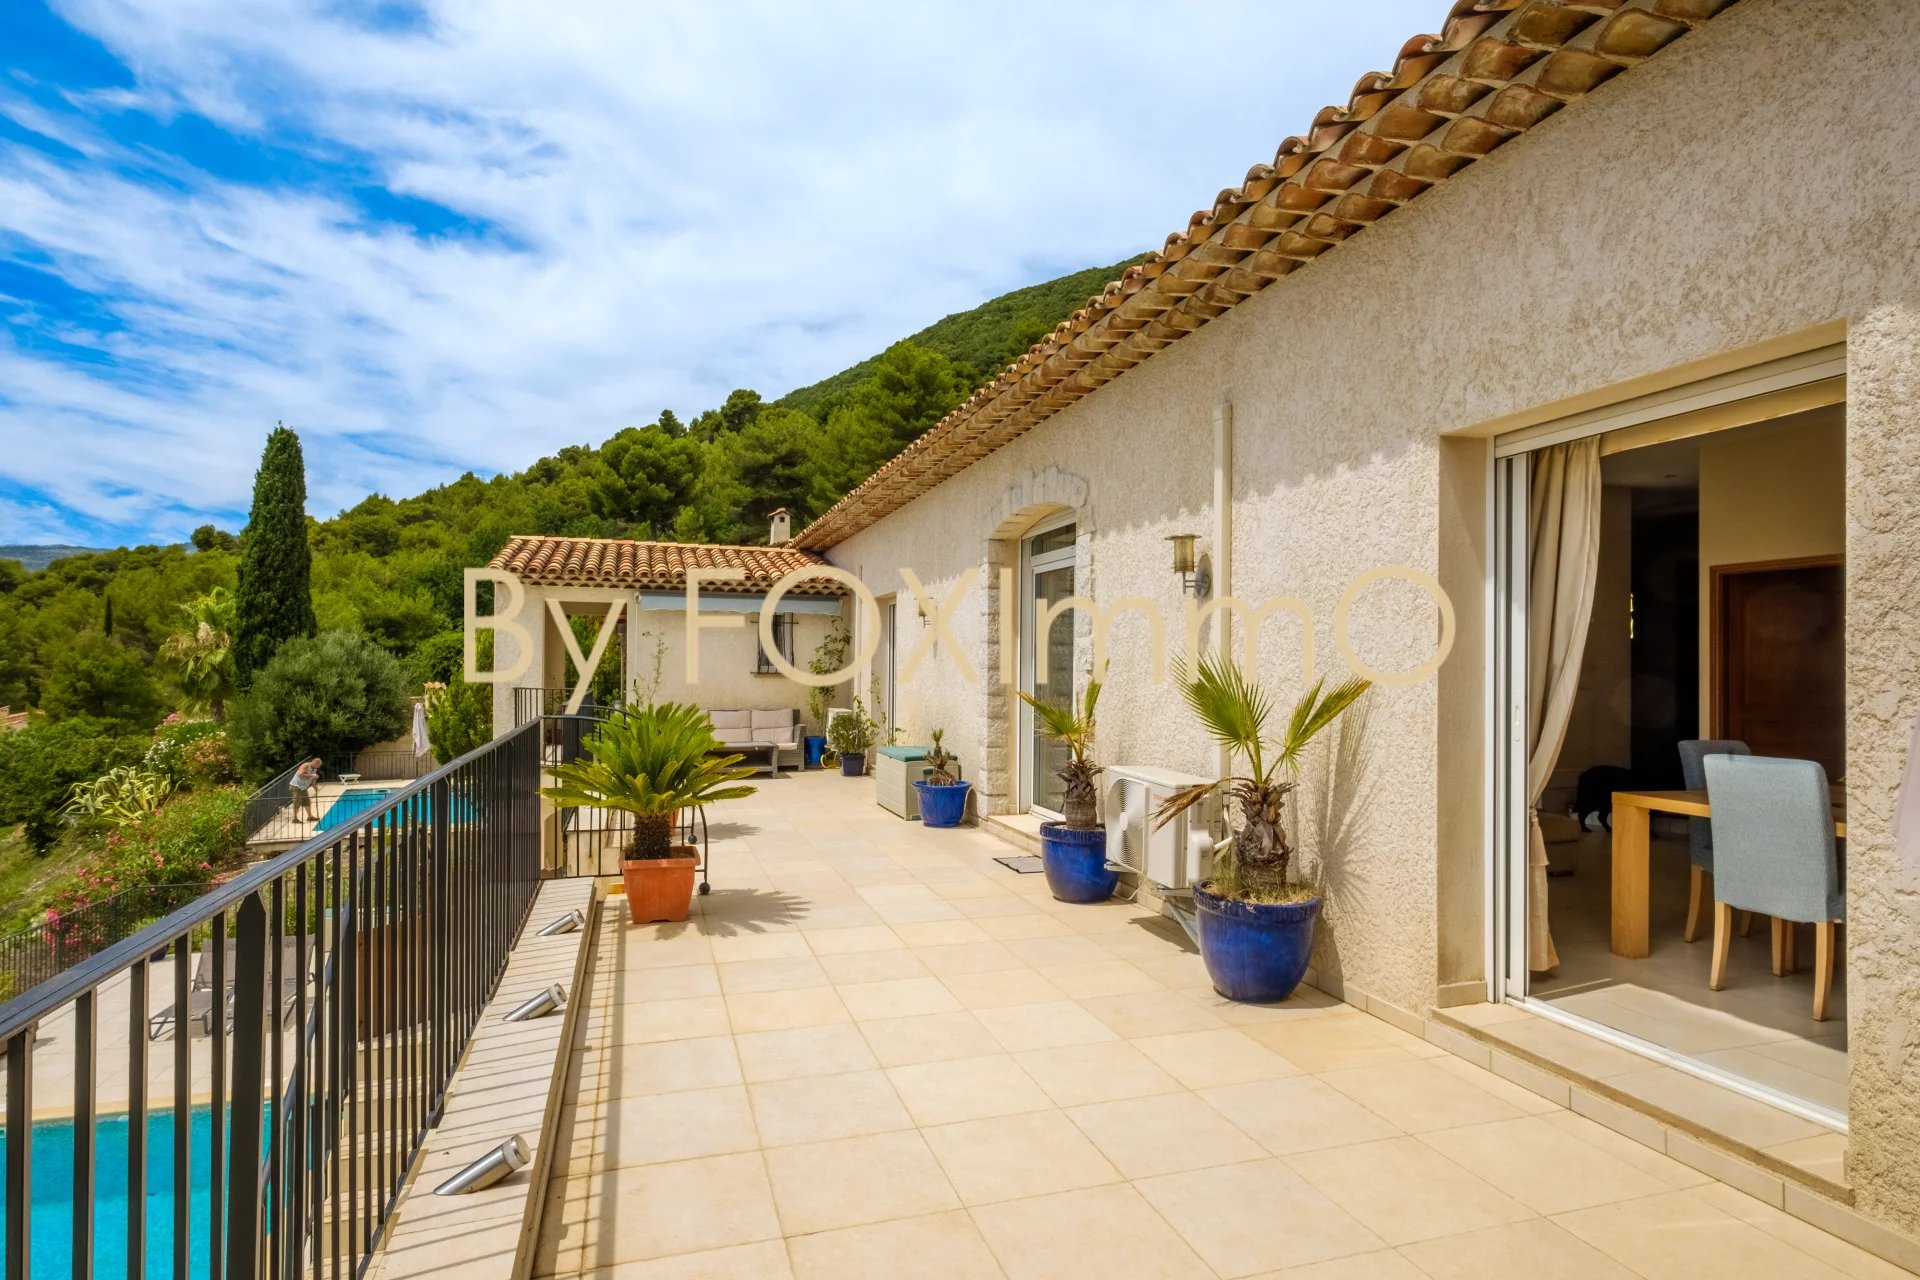 A vendre sur la côte d'Azur, Tourrettes, récente villa, Vue panoramique mer et montagne, calme, dominante,  piscine garage, grand terrain